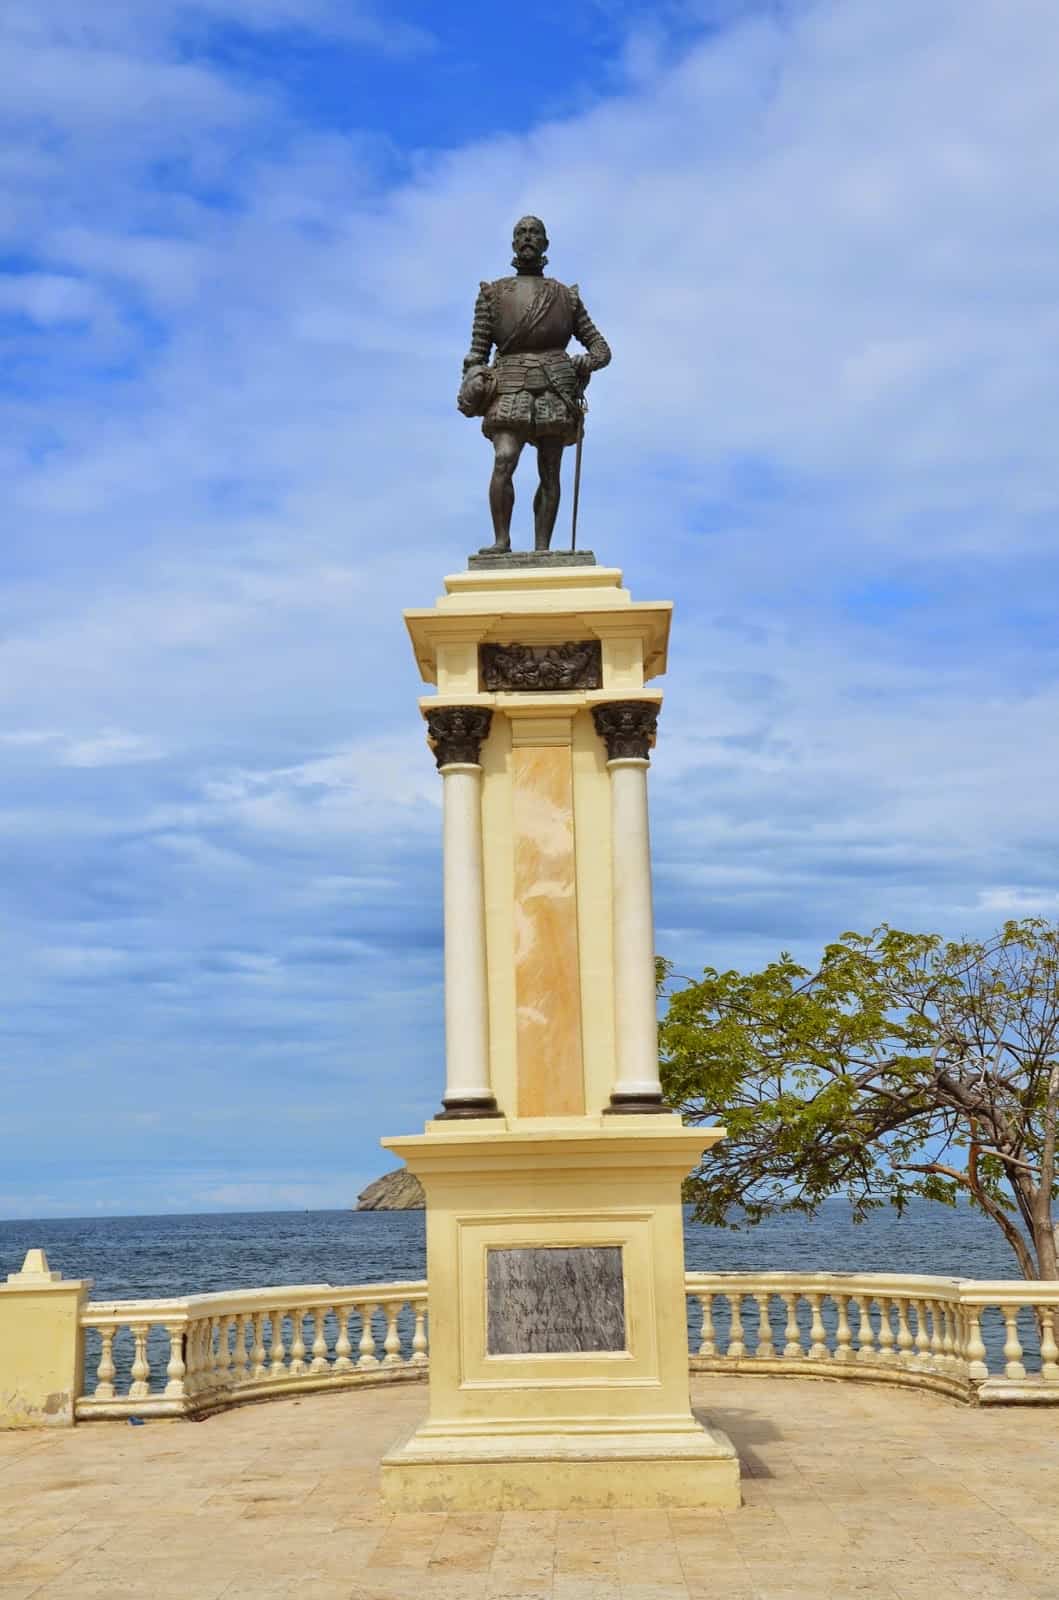 Rodrigo de Bastidas monument in Santa Marta, Magdalena, Colombia